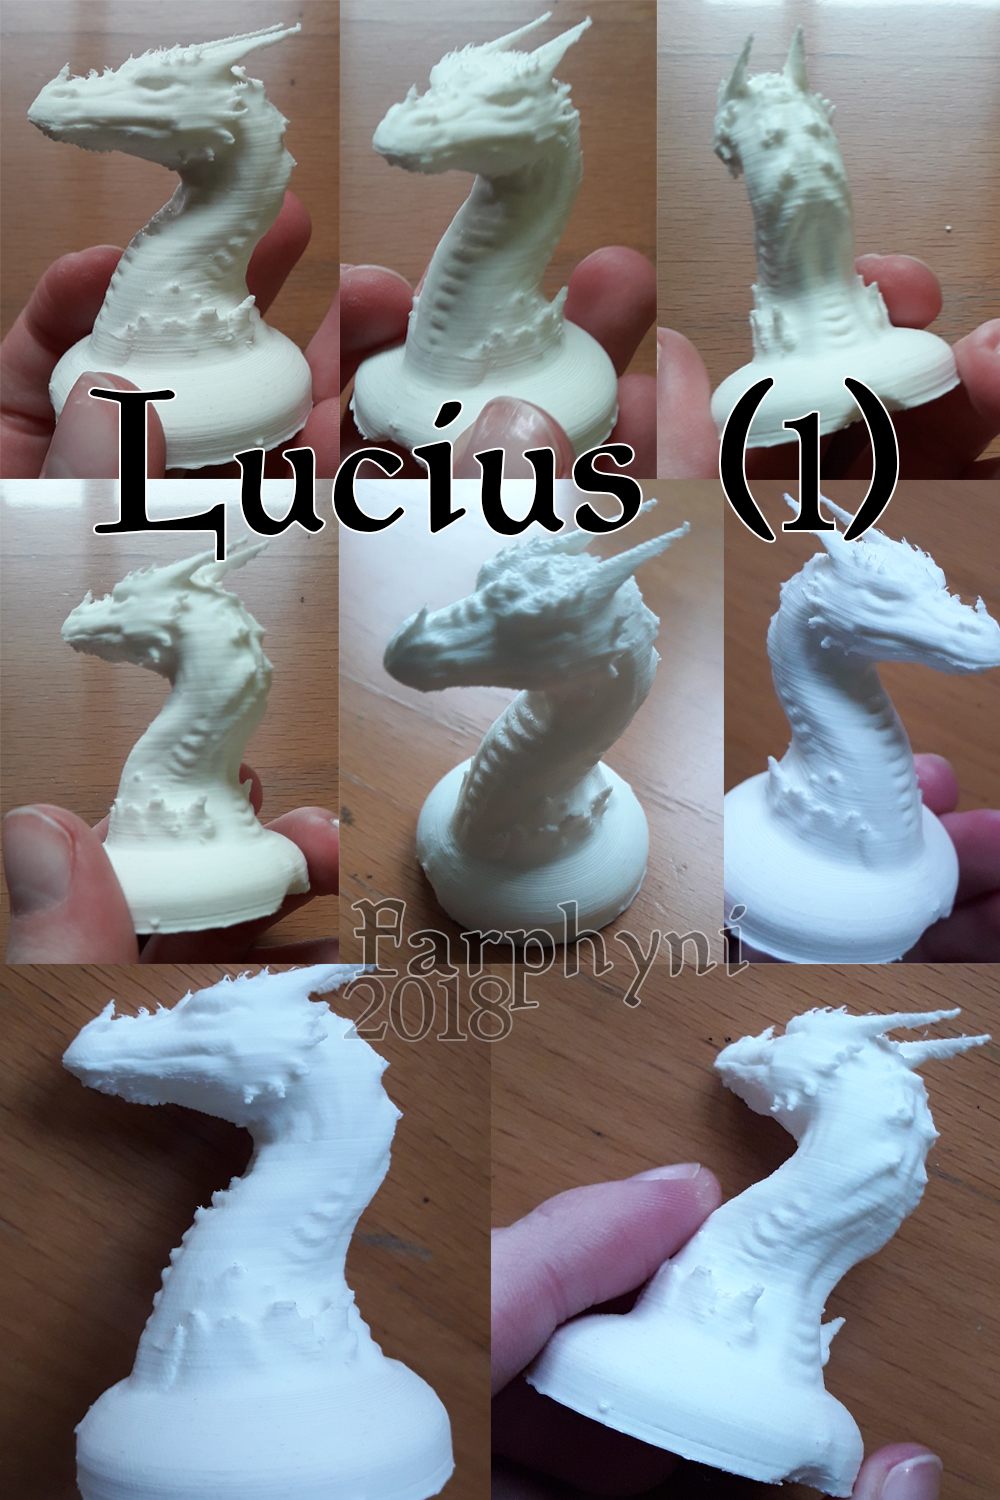 lucius attempt 1